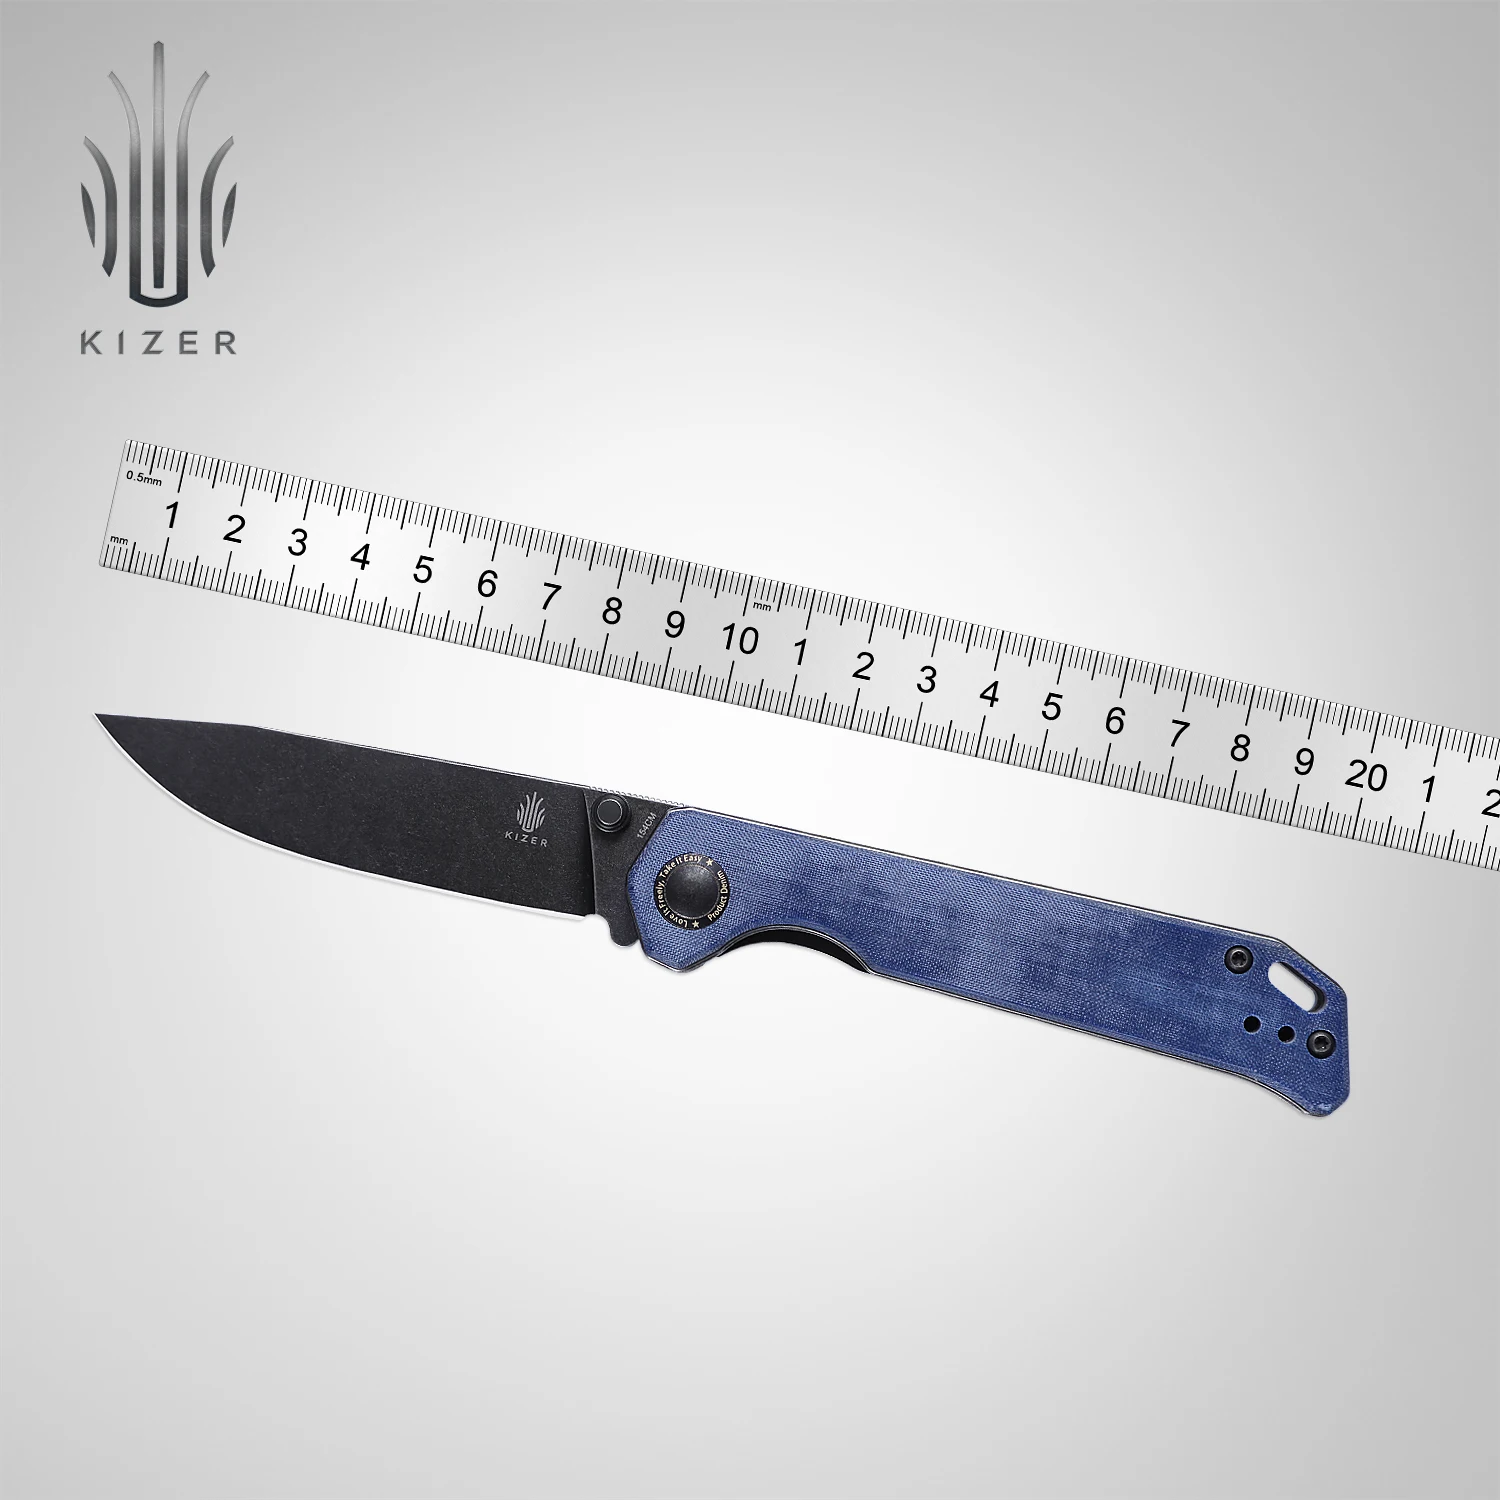 Kizer Folding Pocket Knife V4458.2C1 Begleiter Blue Demin Micarta Handle 2022 New 154CM Steel Tactical knife Outdoor Tools